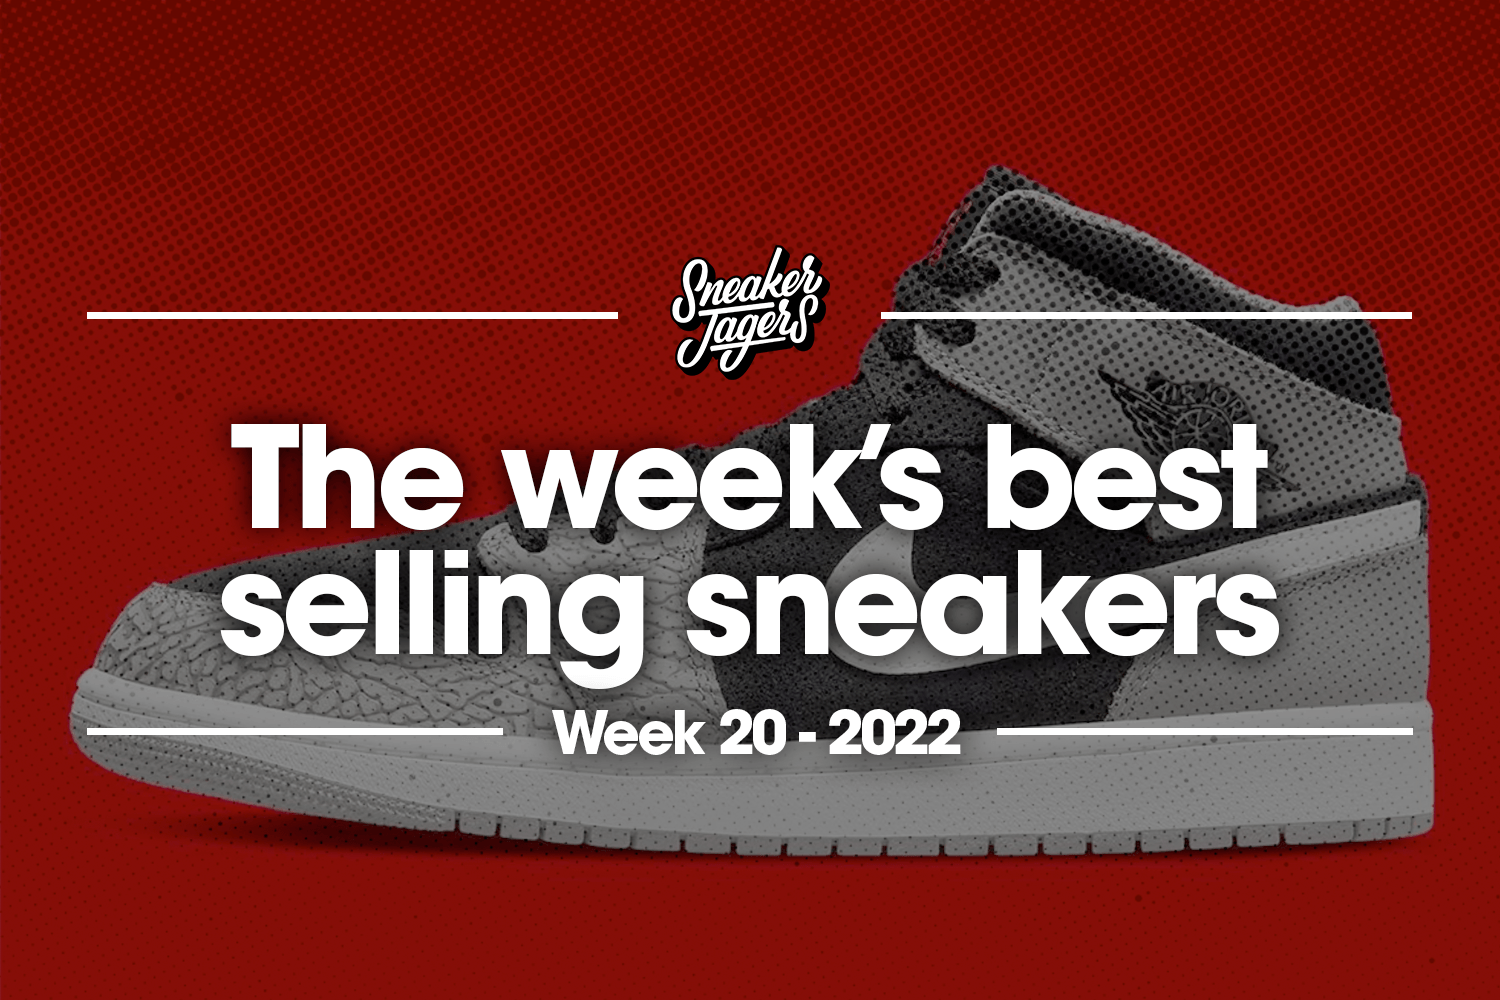 De 5 bestverkochte sneakers van week 20